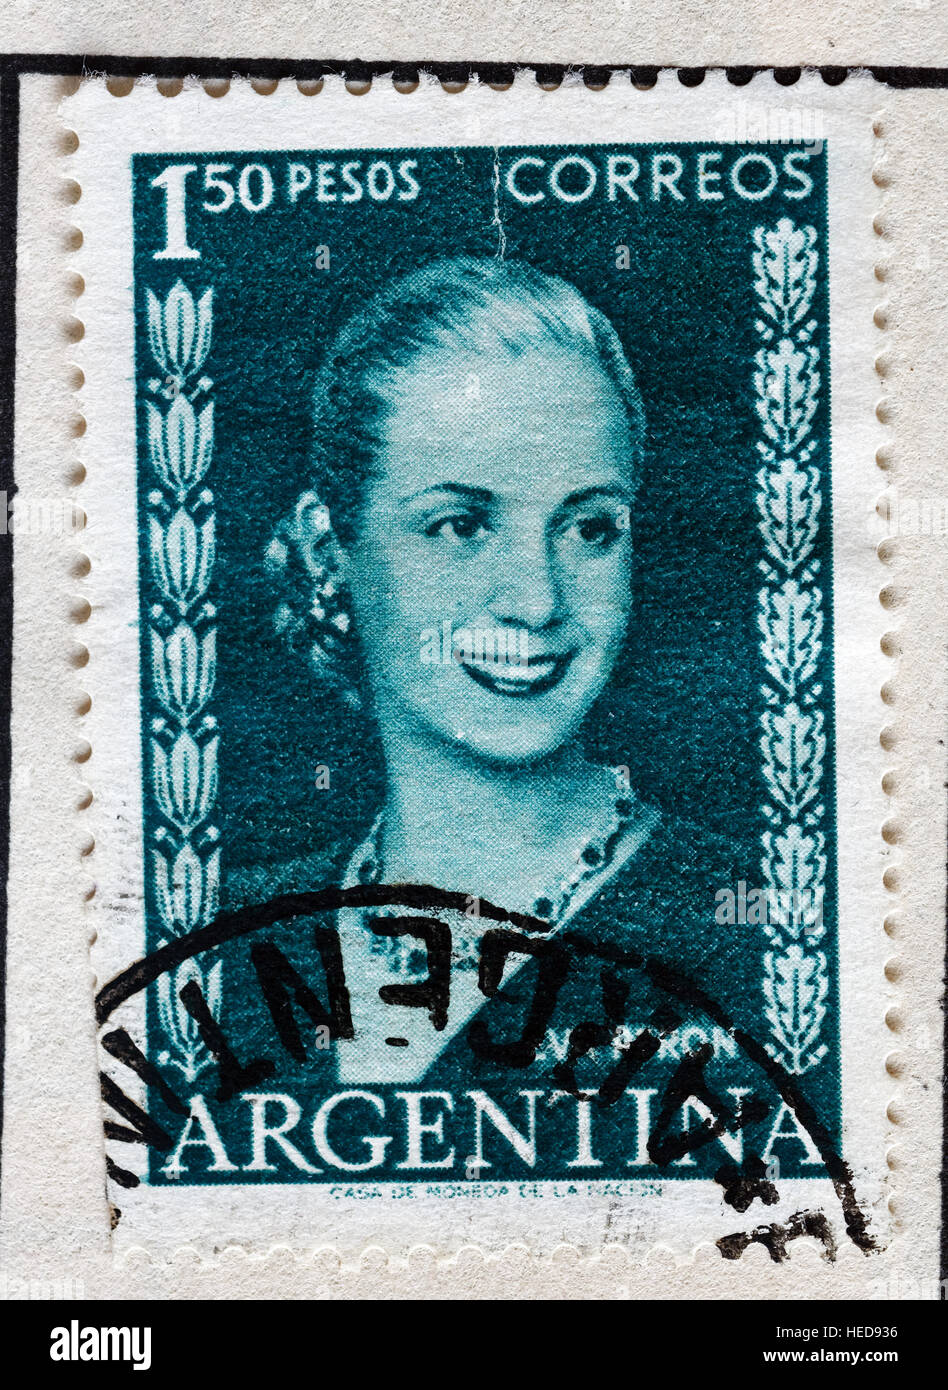 Eva Perron auf argentinischen Briefmarken Stockfoto